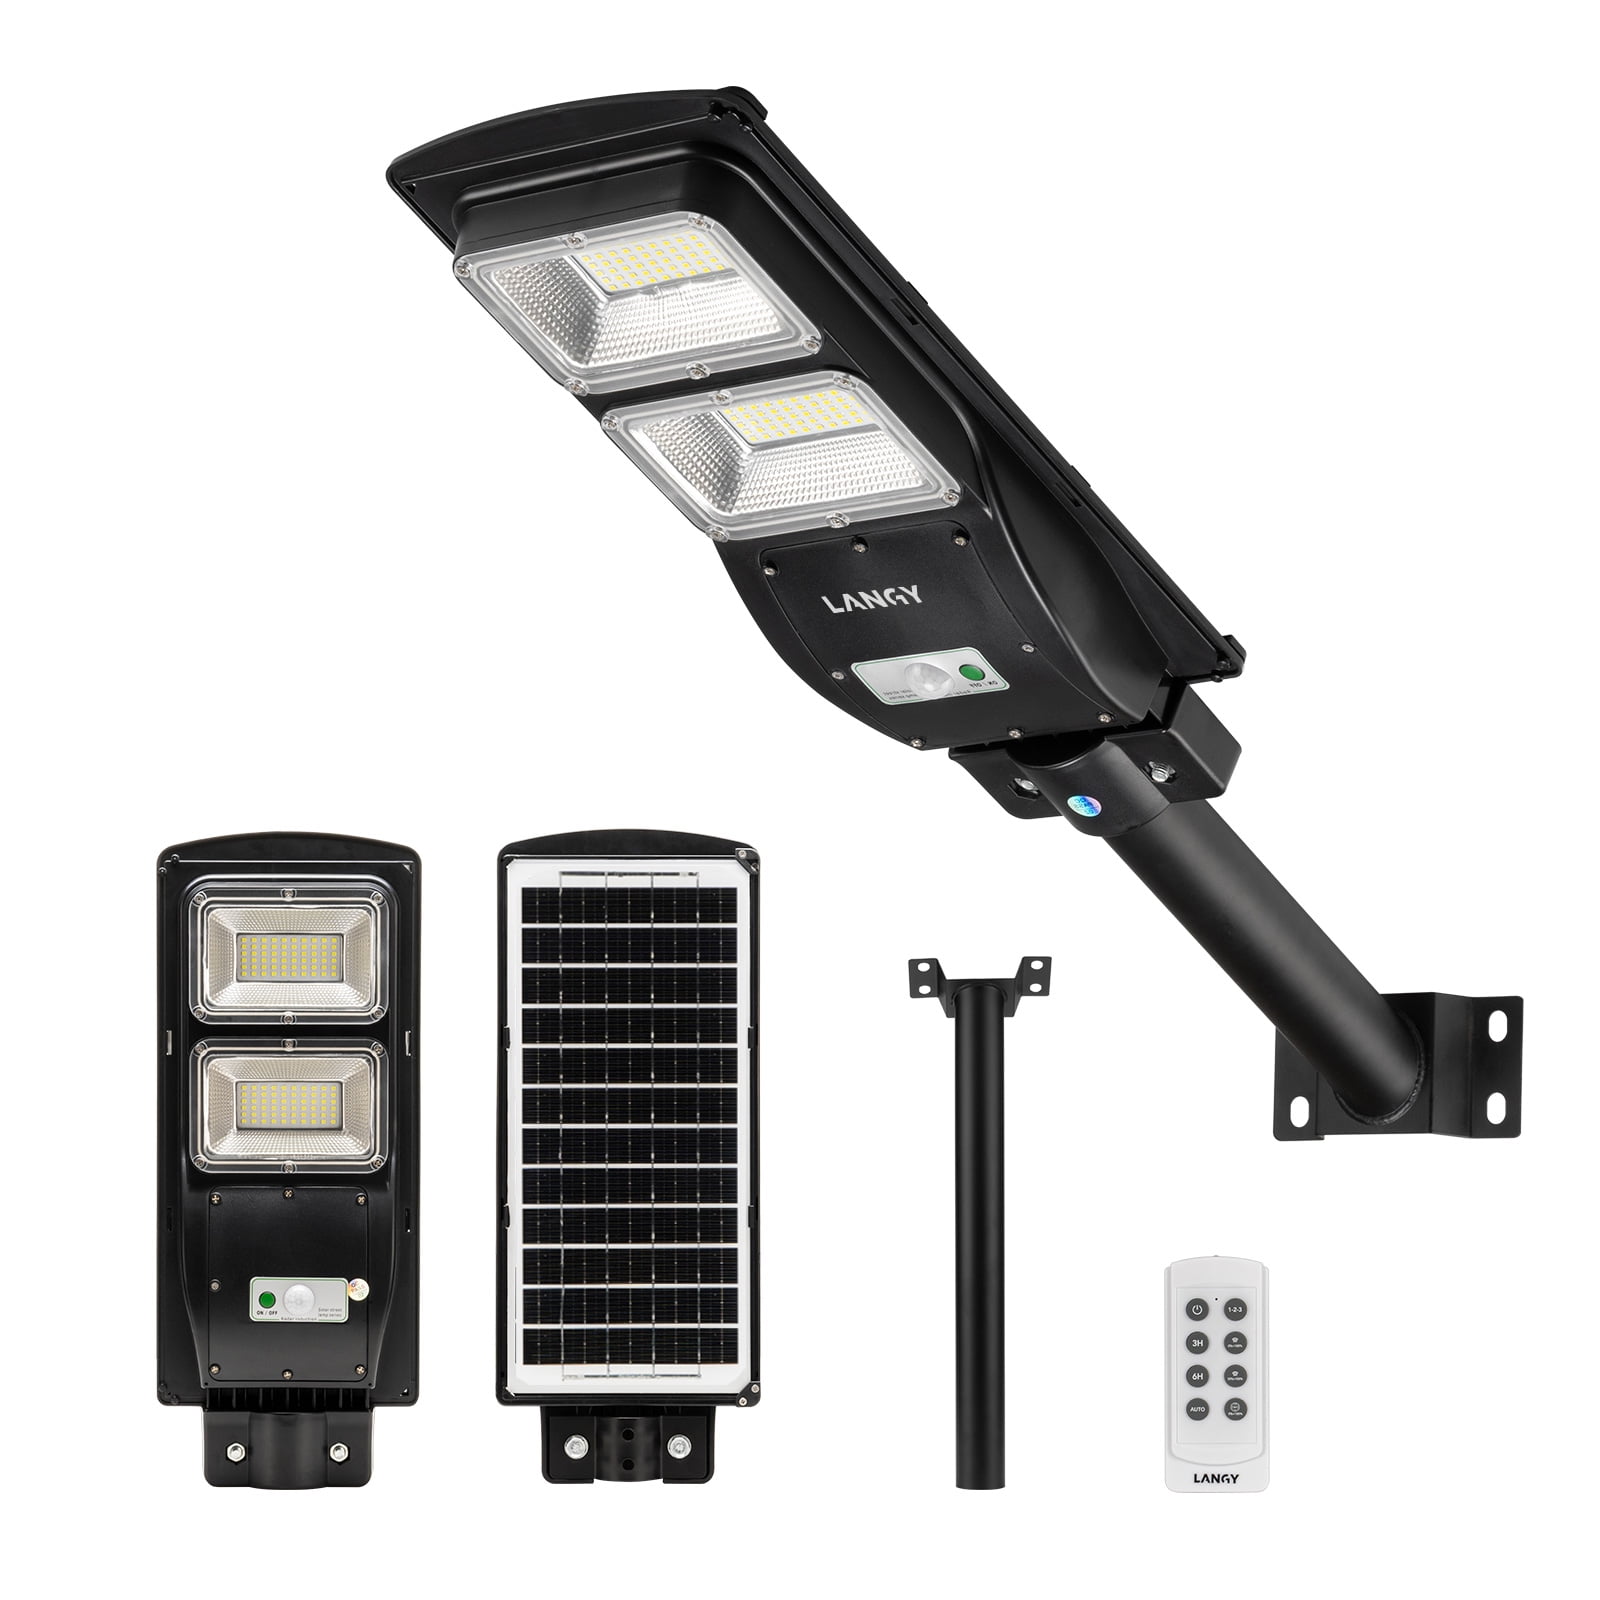 2 x Solar LED Street Light.1060 Lm's Multi Functional Outdoor PIR Motion Sensor 